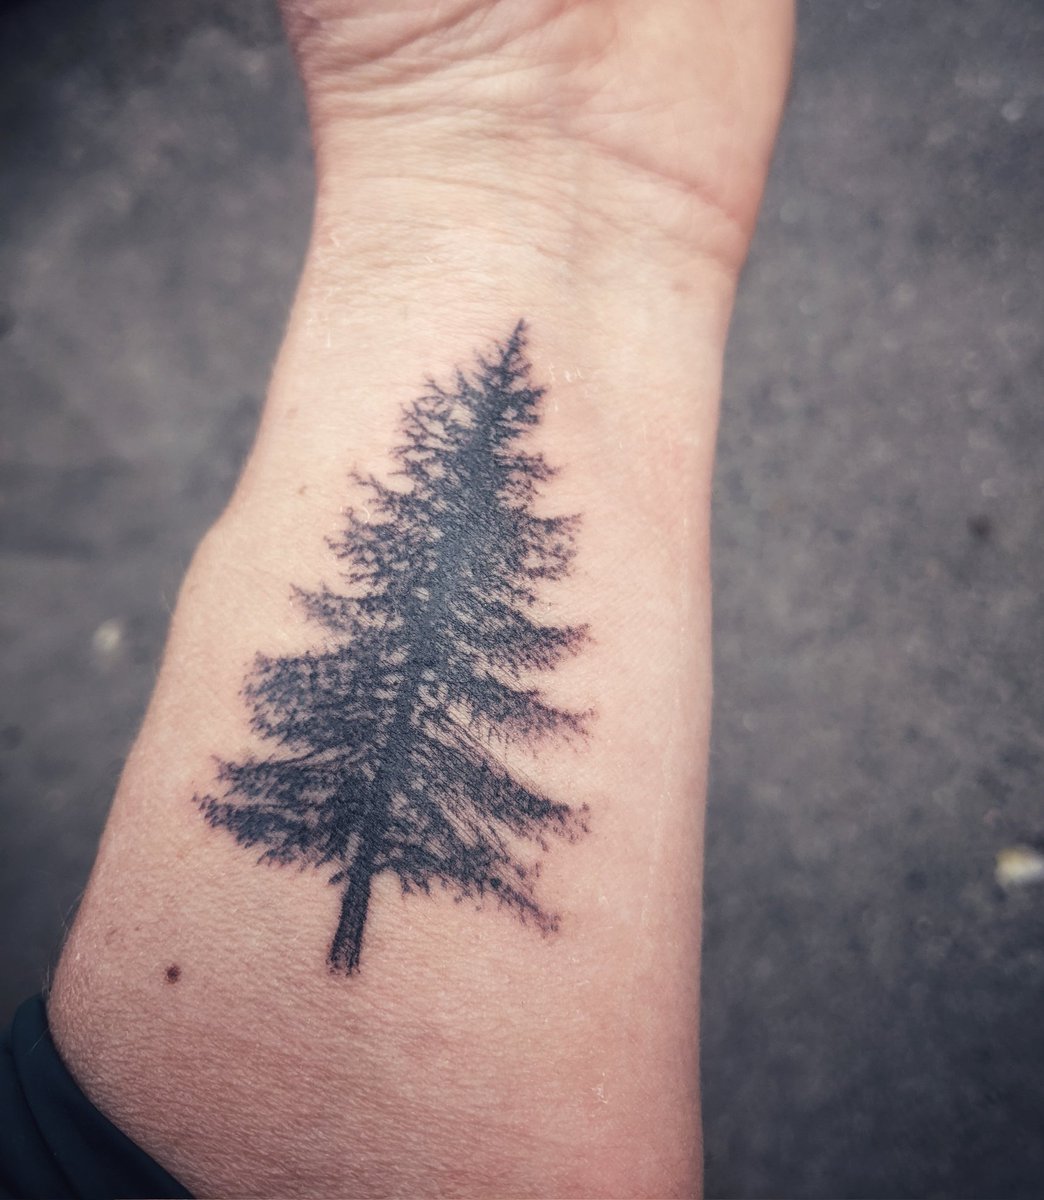 De pinetree. Een veerkrachtige boom die de meest brute omstandigheden overleeft. Symbool voor de prachtige natuur waar ik van hou, in het bijzonder die van Scandinavië die deel van mijn leven is geworden. Ik draag het voor altijd met me mee 💚. #pinetree #tattoo #naturelover